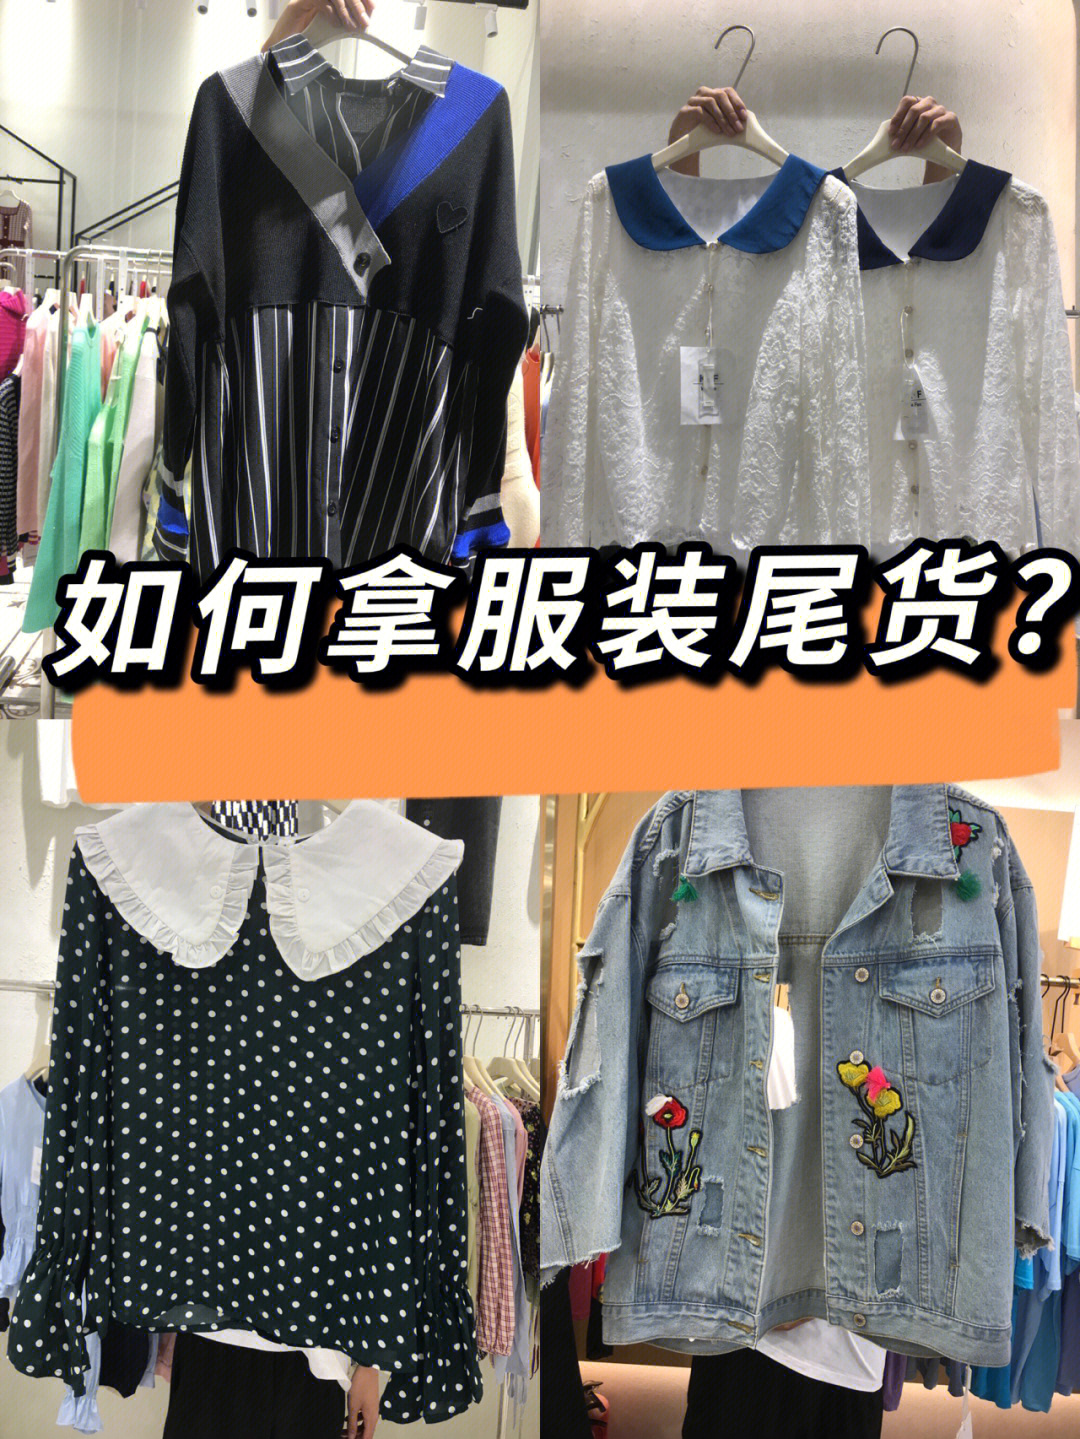 广州服装尾货的市场就不用多说了有石井庆丰,昌岗,锦东,国大等等!